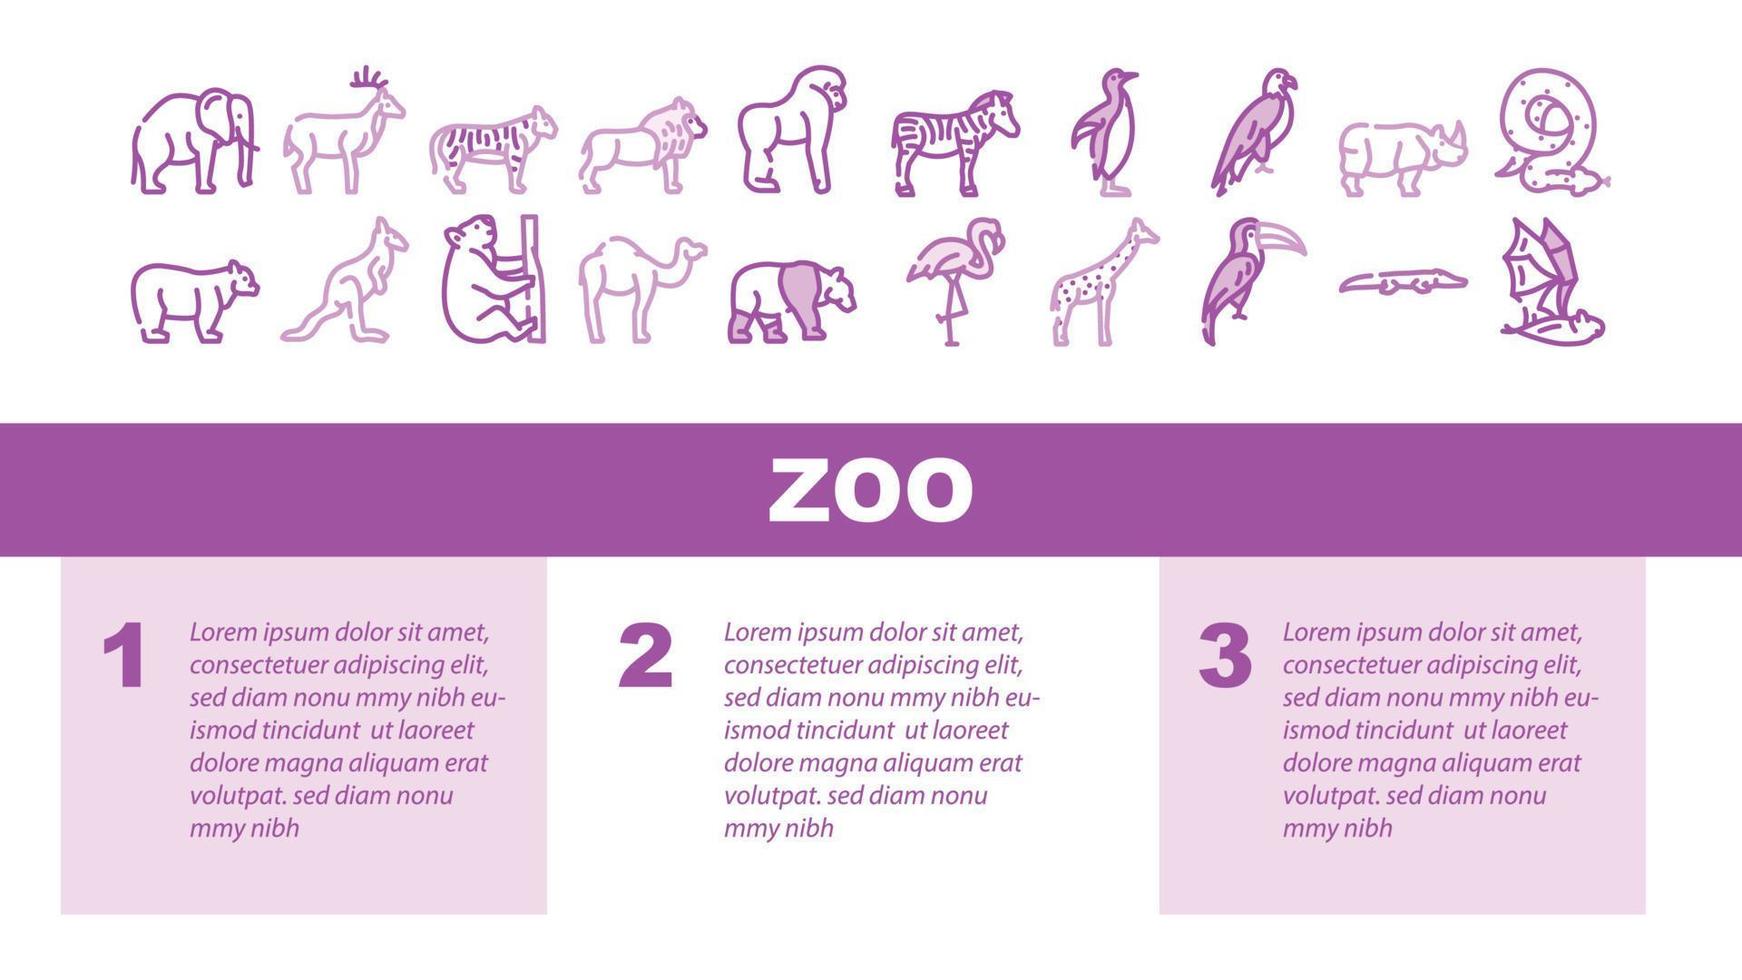 djurparksdjur, fåglar och ormlandningshuvudvektor vektor